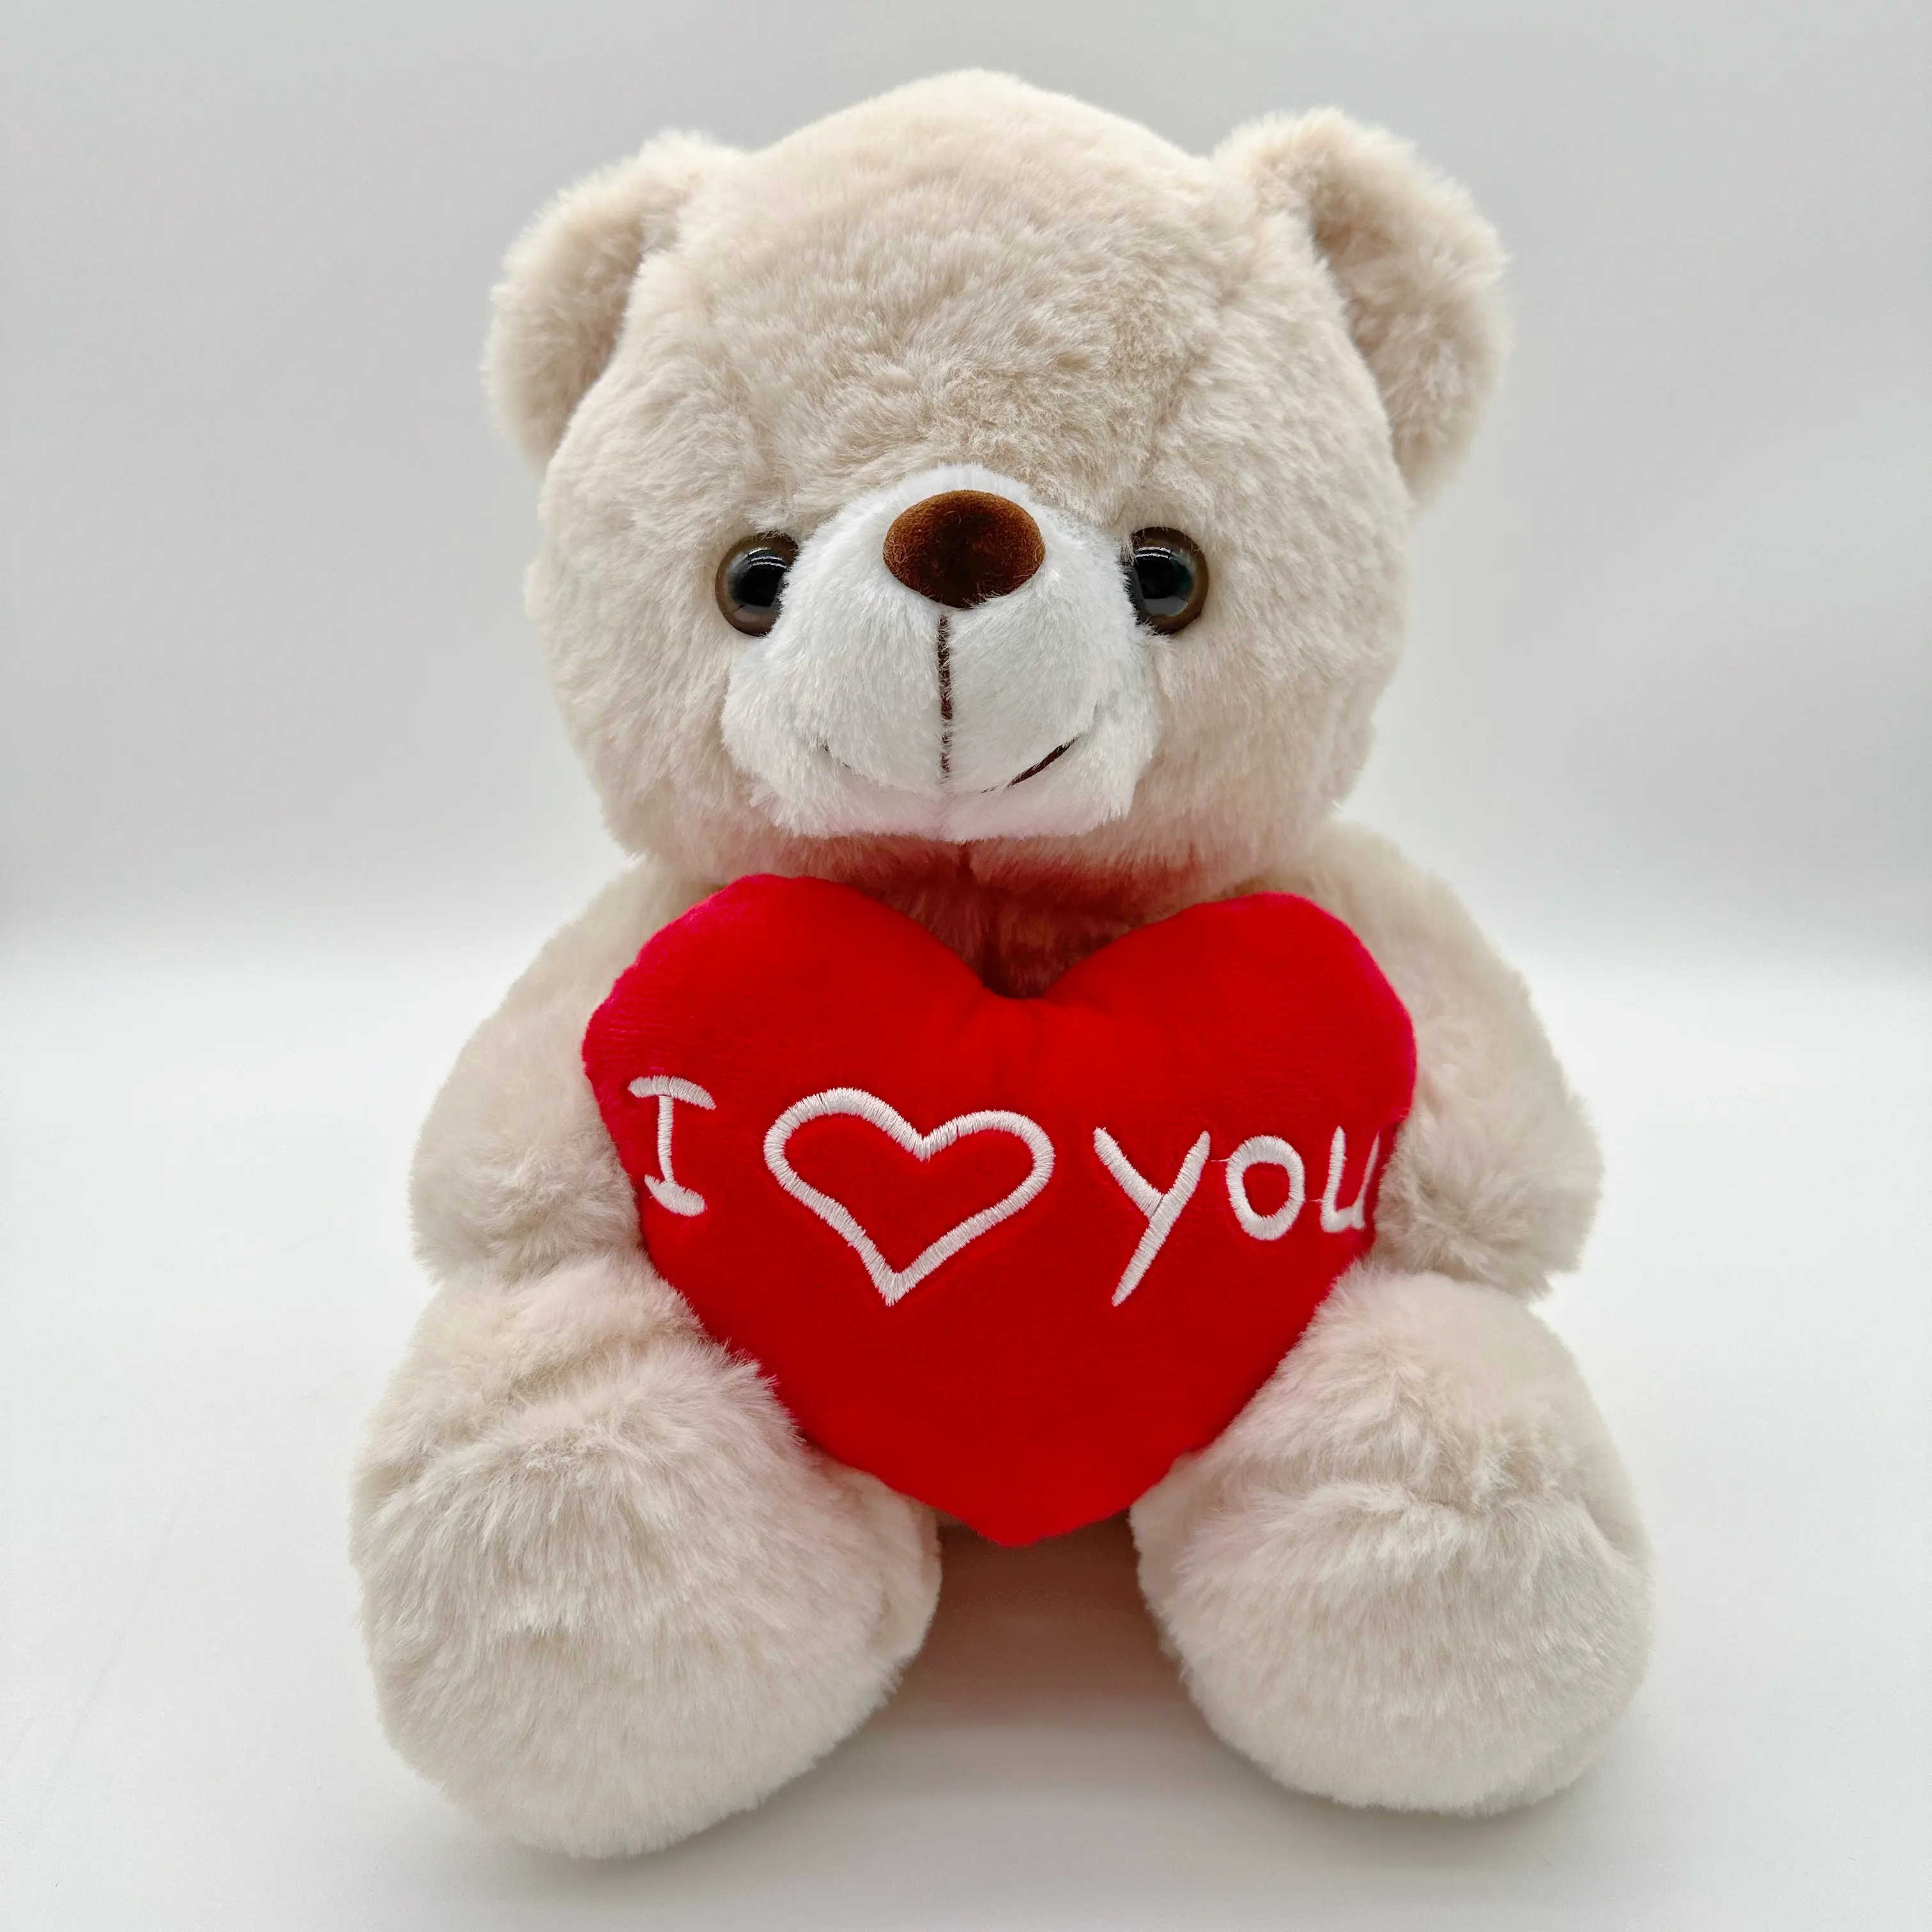 발렌타인 데이 선물 박제 동물 장난감 귀여운 테디 베어 심장 봉제 장난감